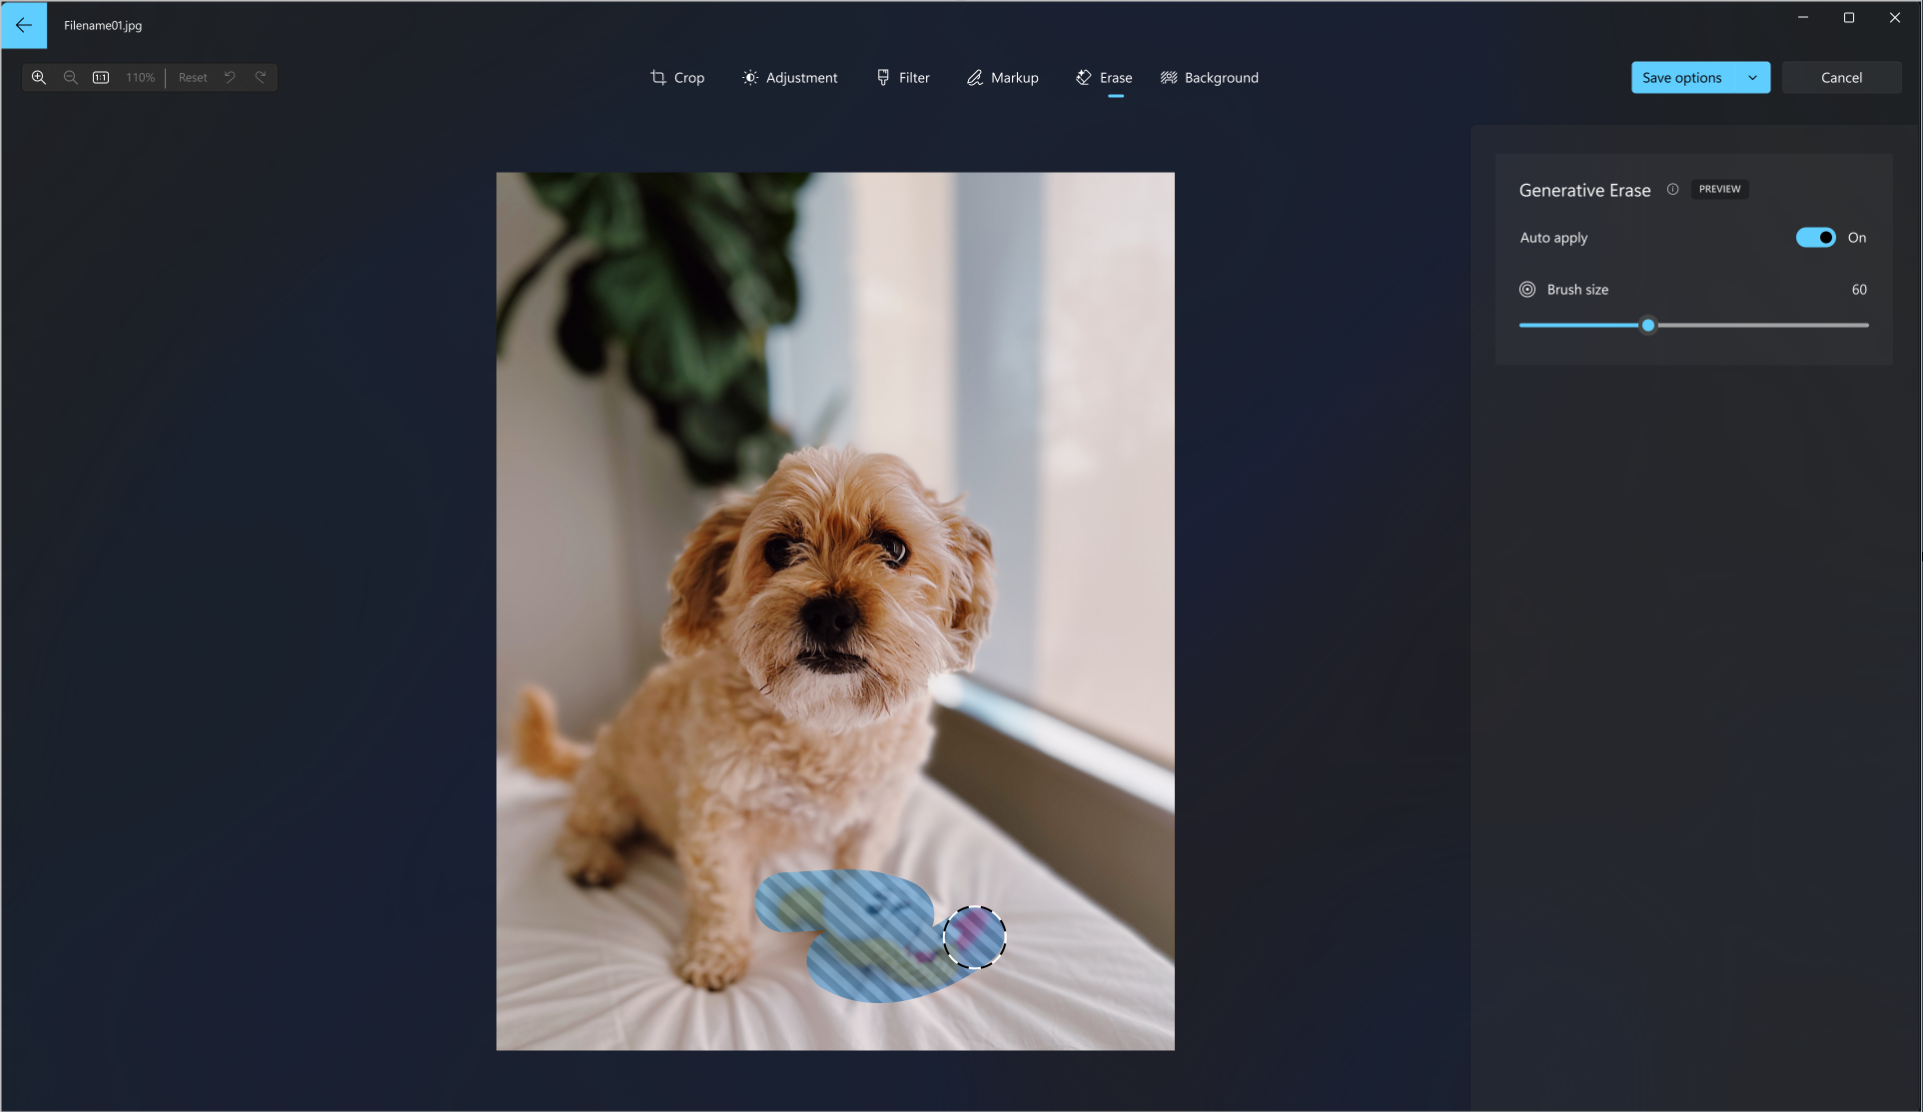 Schermopname van het generatieve wishulpmiddel dat wordt gebruikt op een foto van een hond om het honden speelgoed van de foto te wissen.